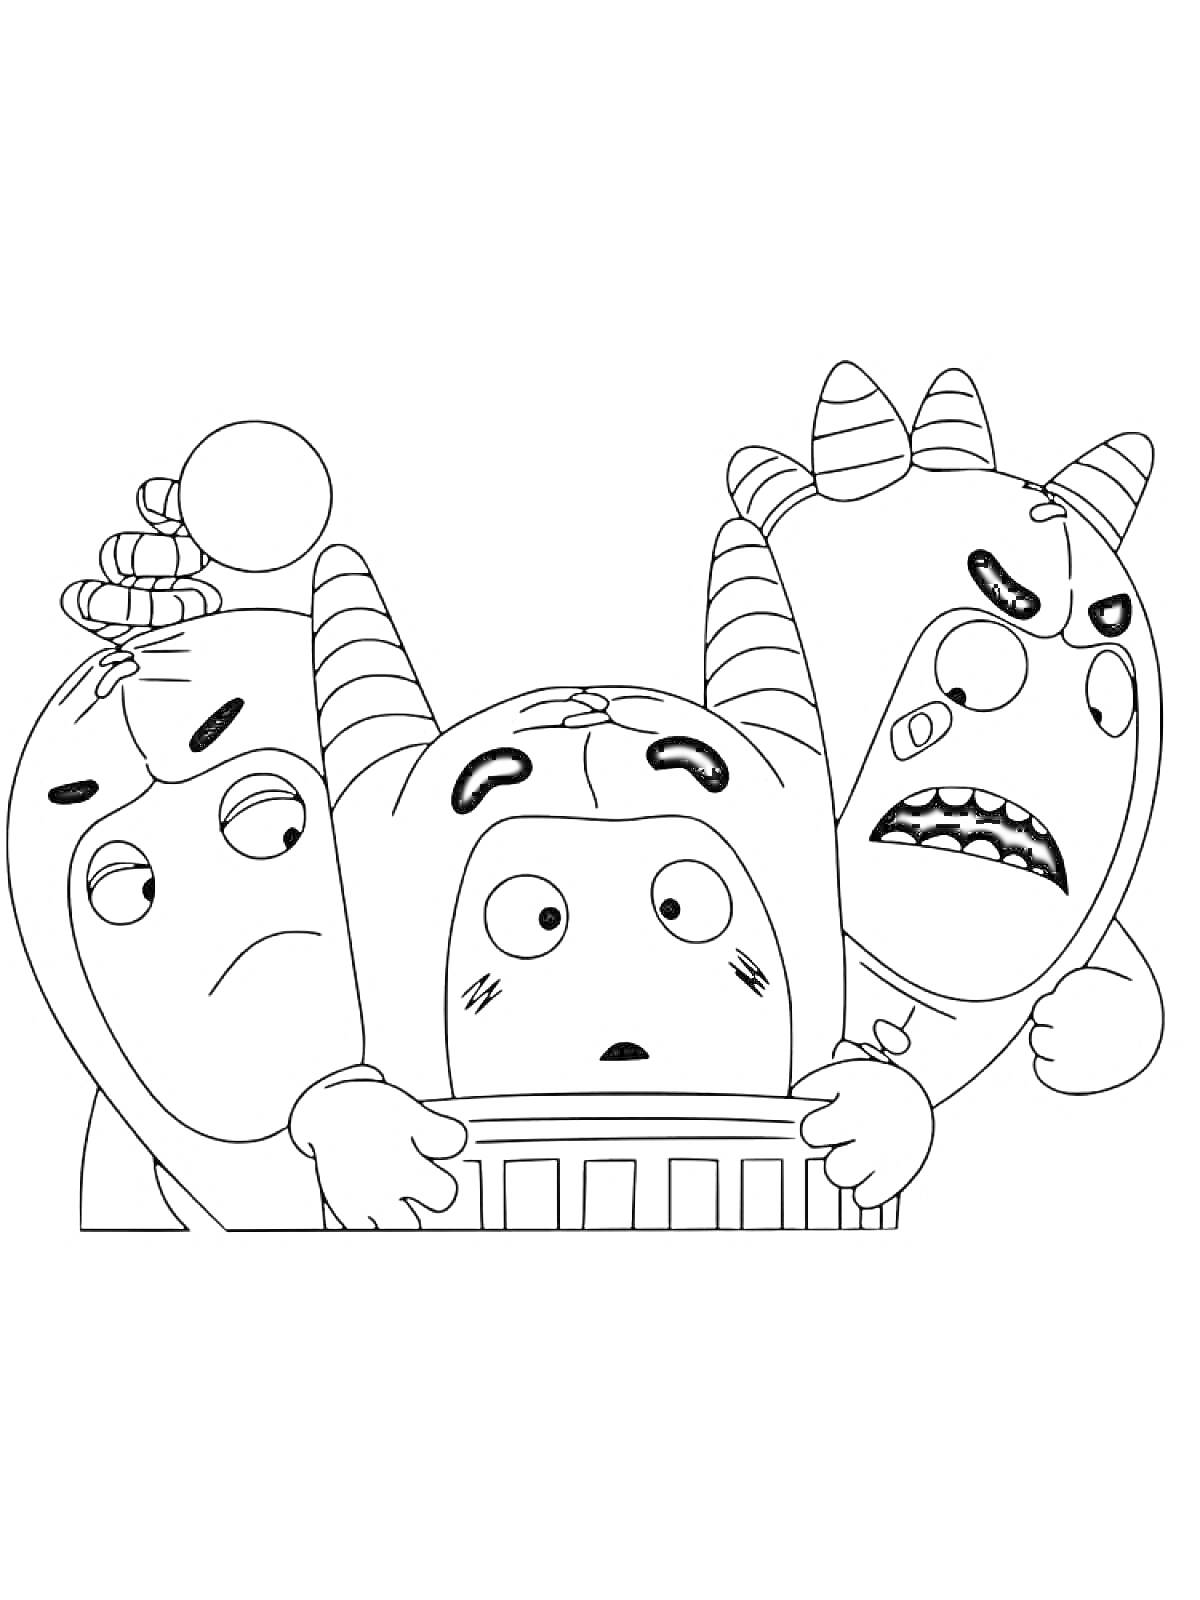 Раскраска Три чудика с рогами и усиками, один в центре с испуганным лицом, двое по бокам выглядят обеспокоенно и сердито